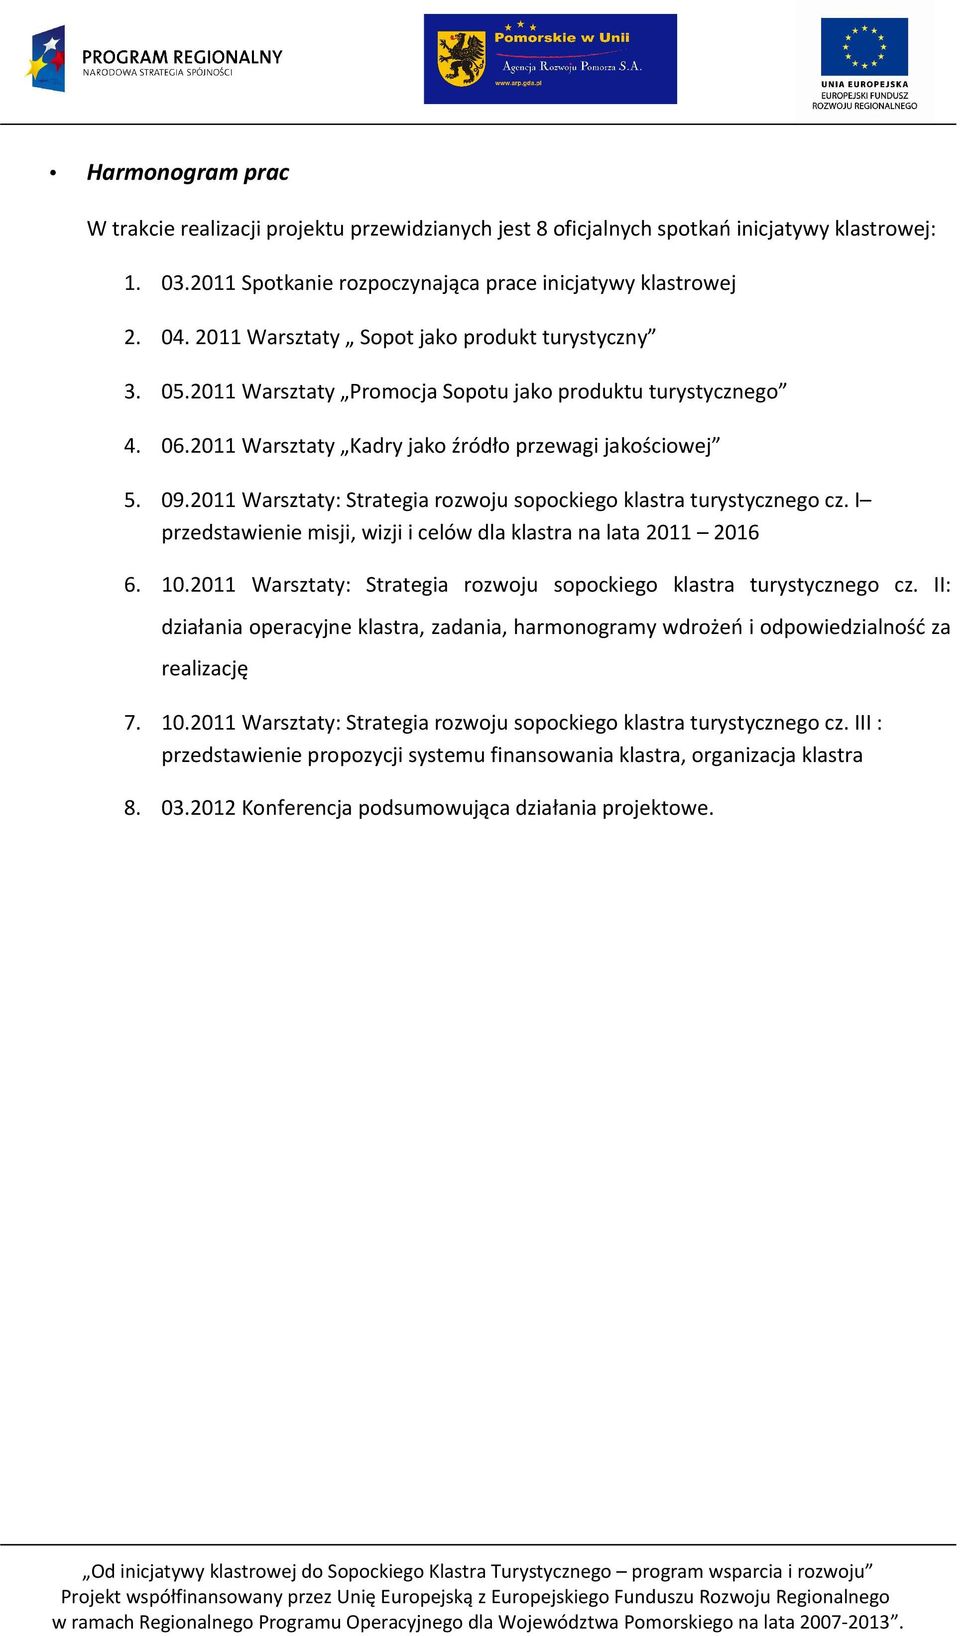 2011 Warsztaty: Strategia rozwoju sopockiego klastra turystycznego cz. I przedstawienie misji, wizji i celów dla klastra na lata 2011 2016 6. 10.